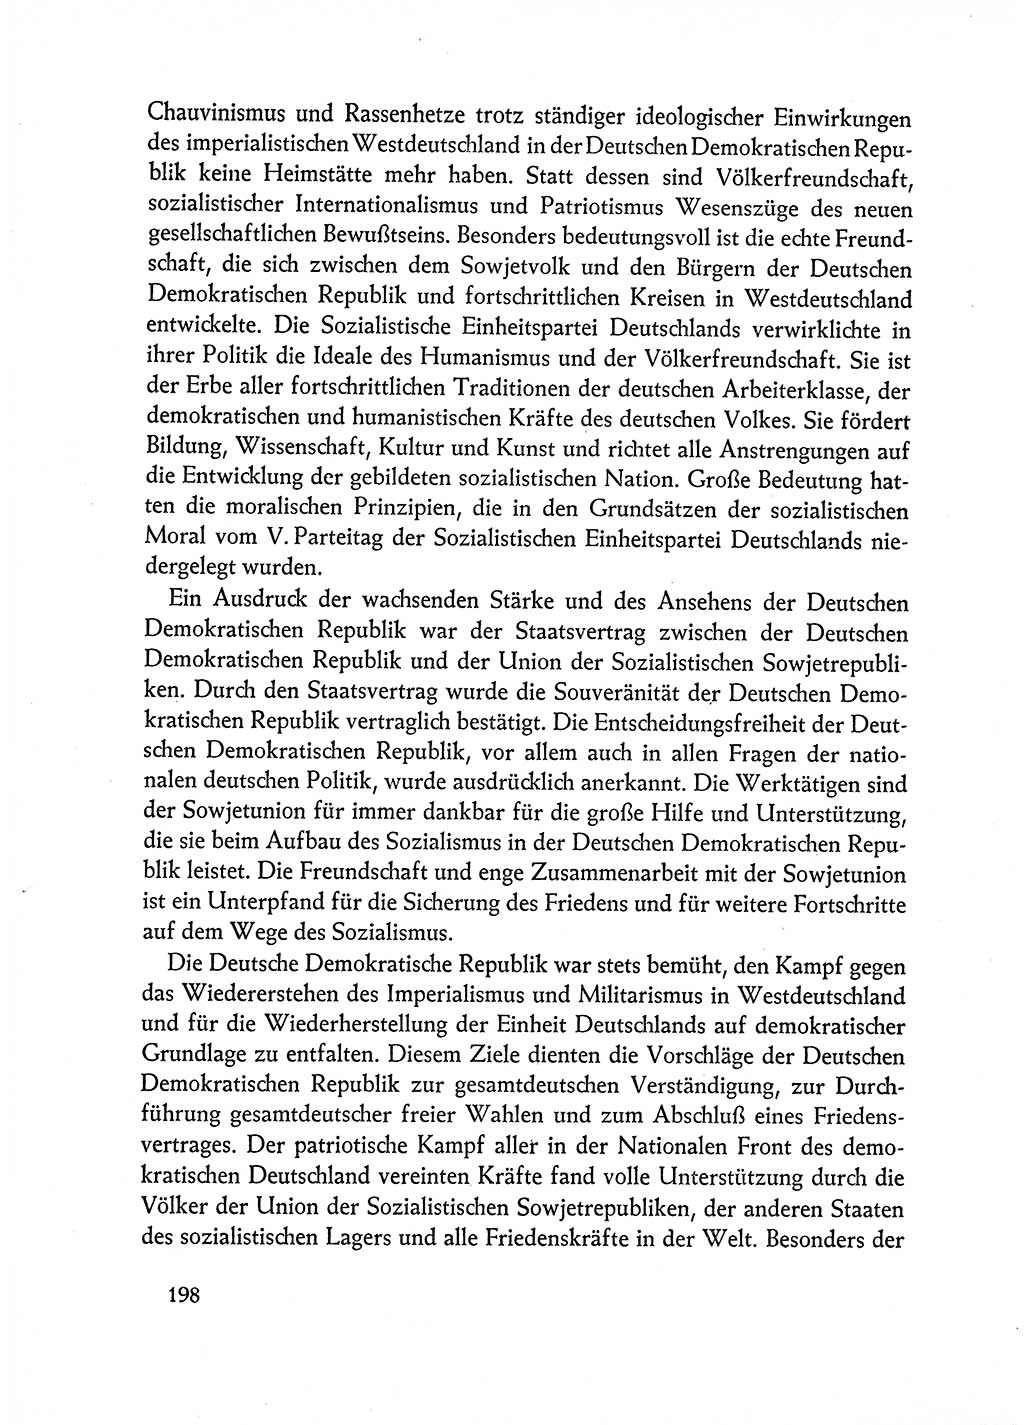 Dokumente der Sozialistischen Einheitspartei Deutschlands (SED) [Deutsche Demokratische Republik (DDR)] 1962-1963, Seite 198 (Dok. SED DDR 1962-1963, S. 198)